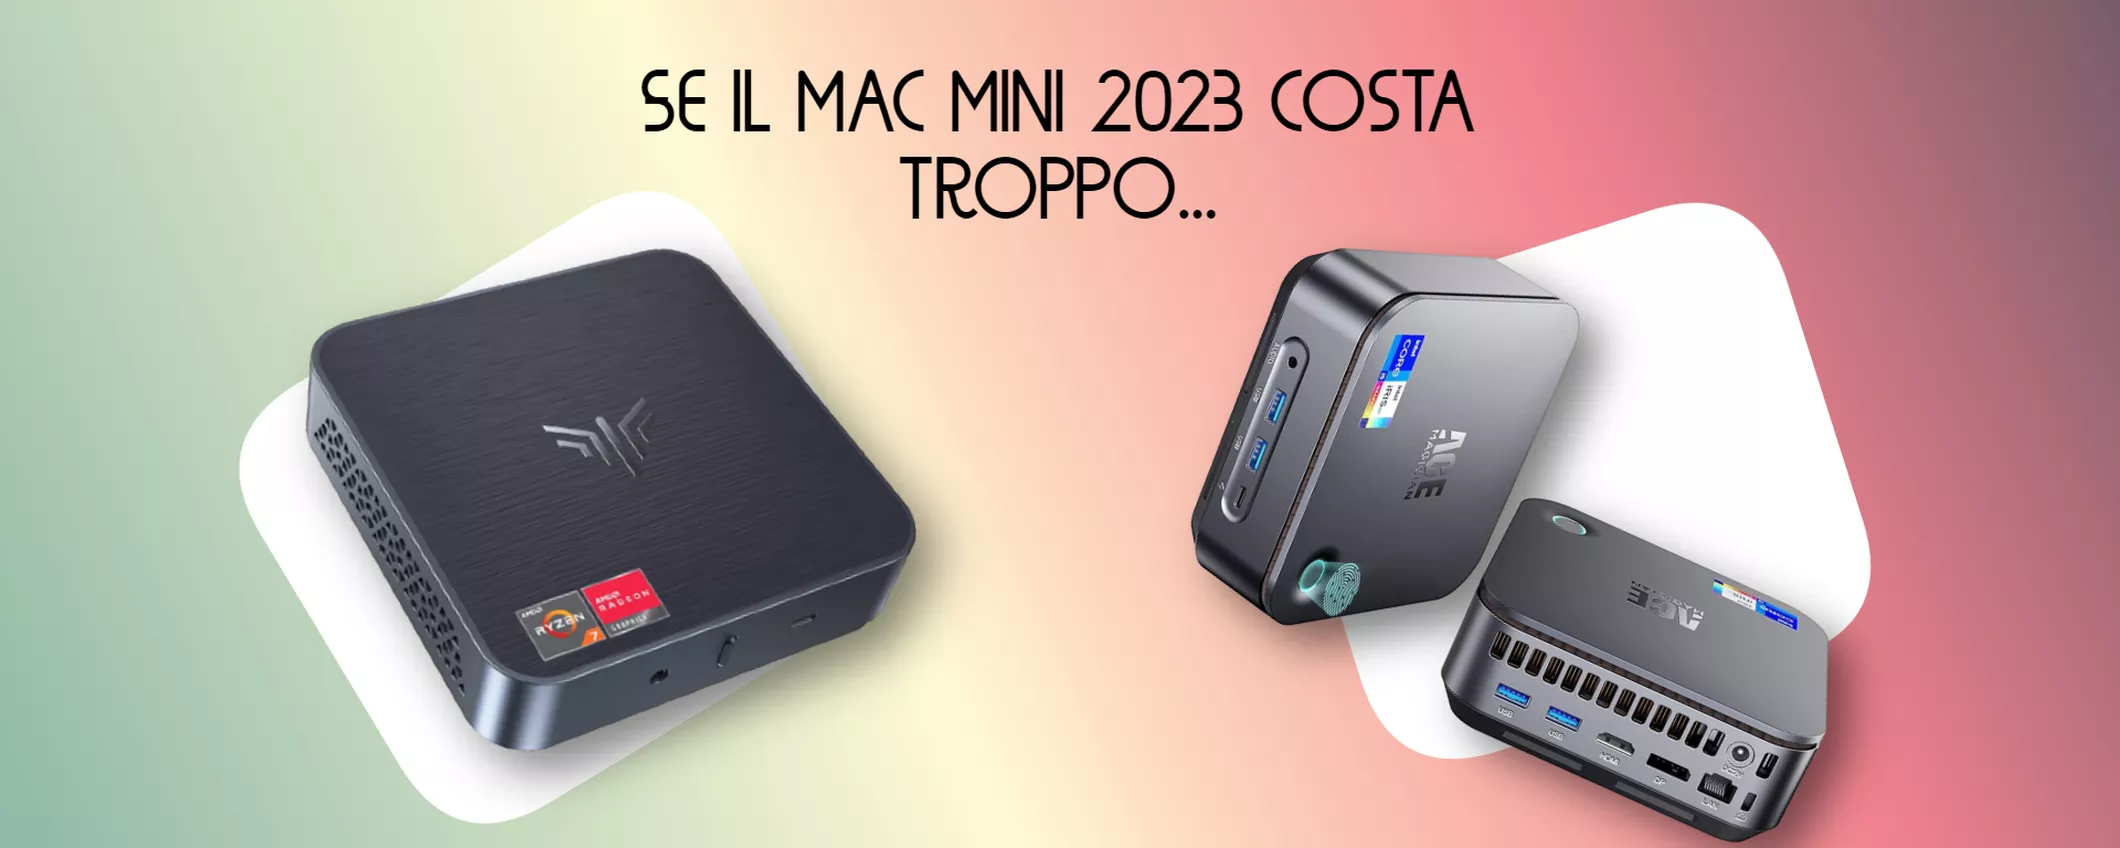 Il Mac Mini 2023 costa troppo? Ecco due ottime alternative sotto i 400€